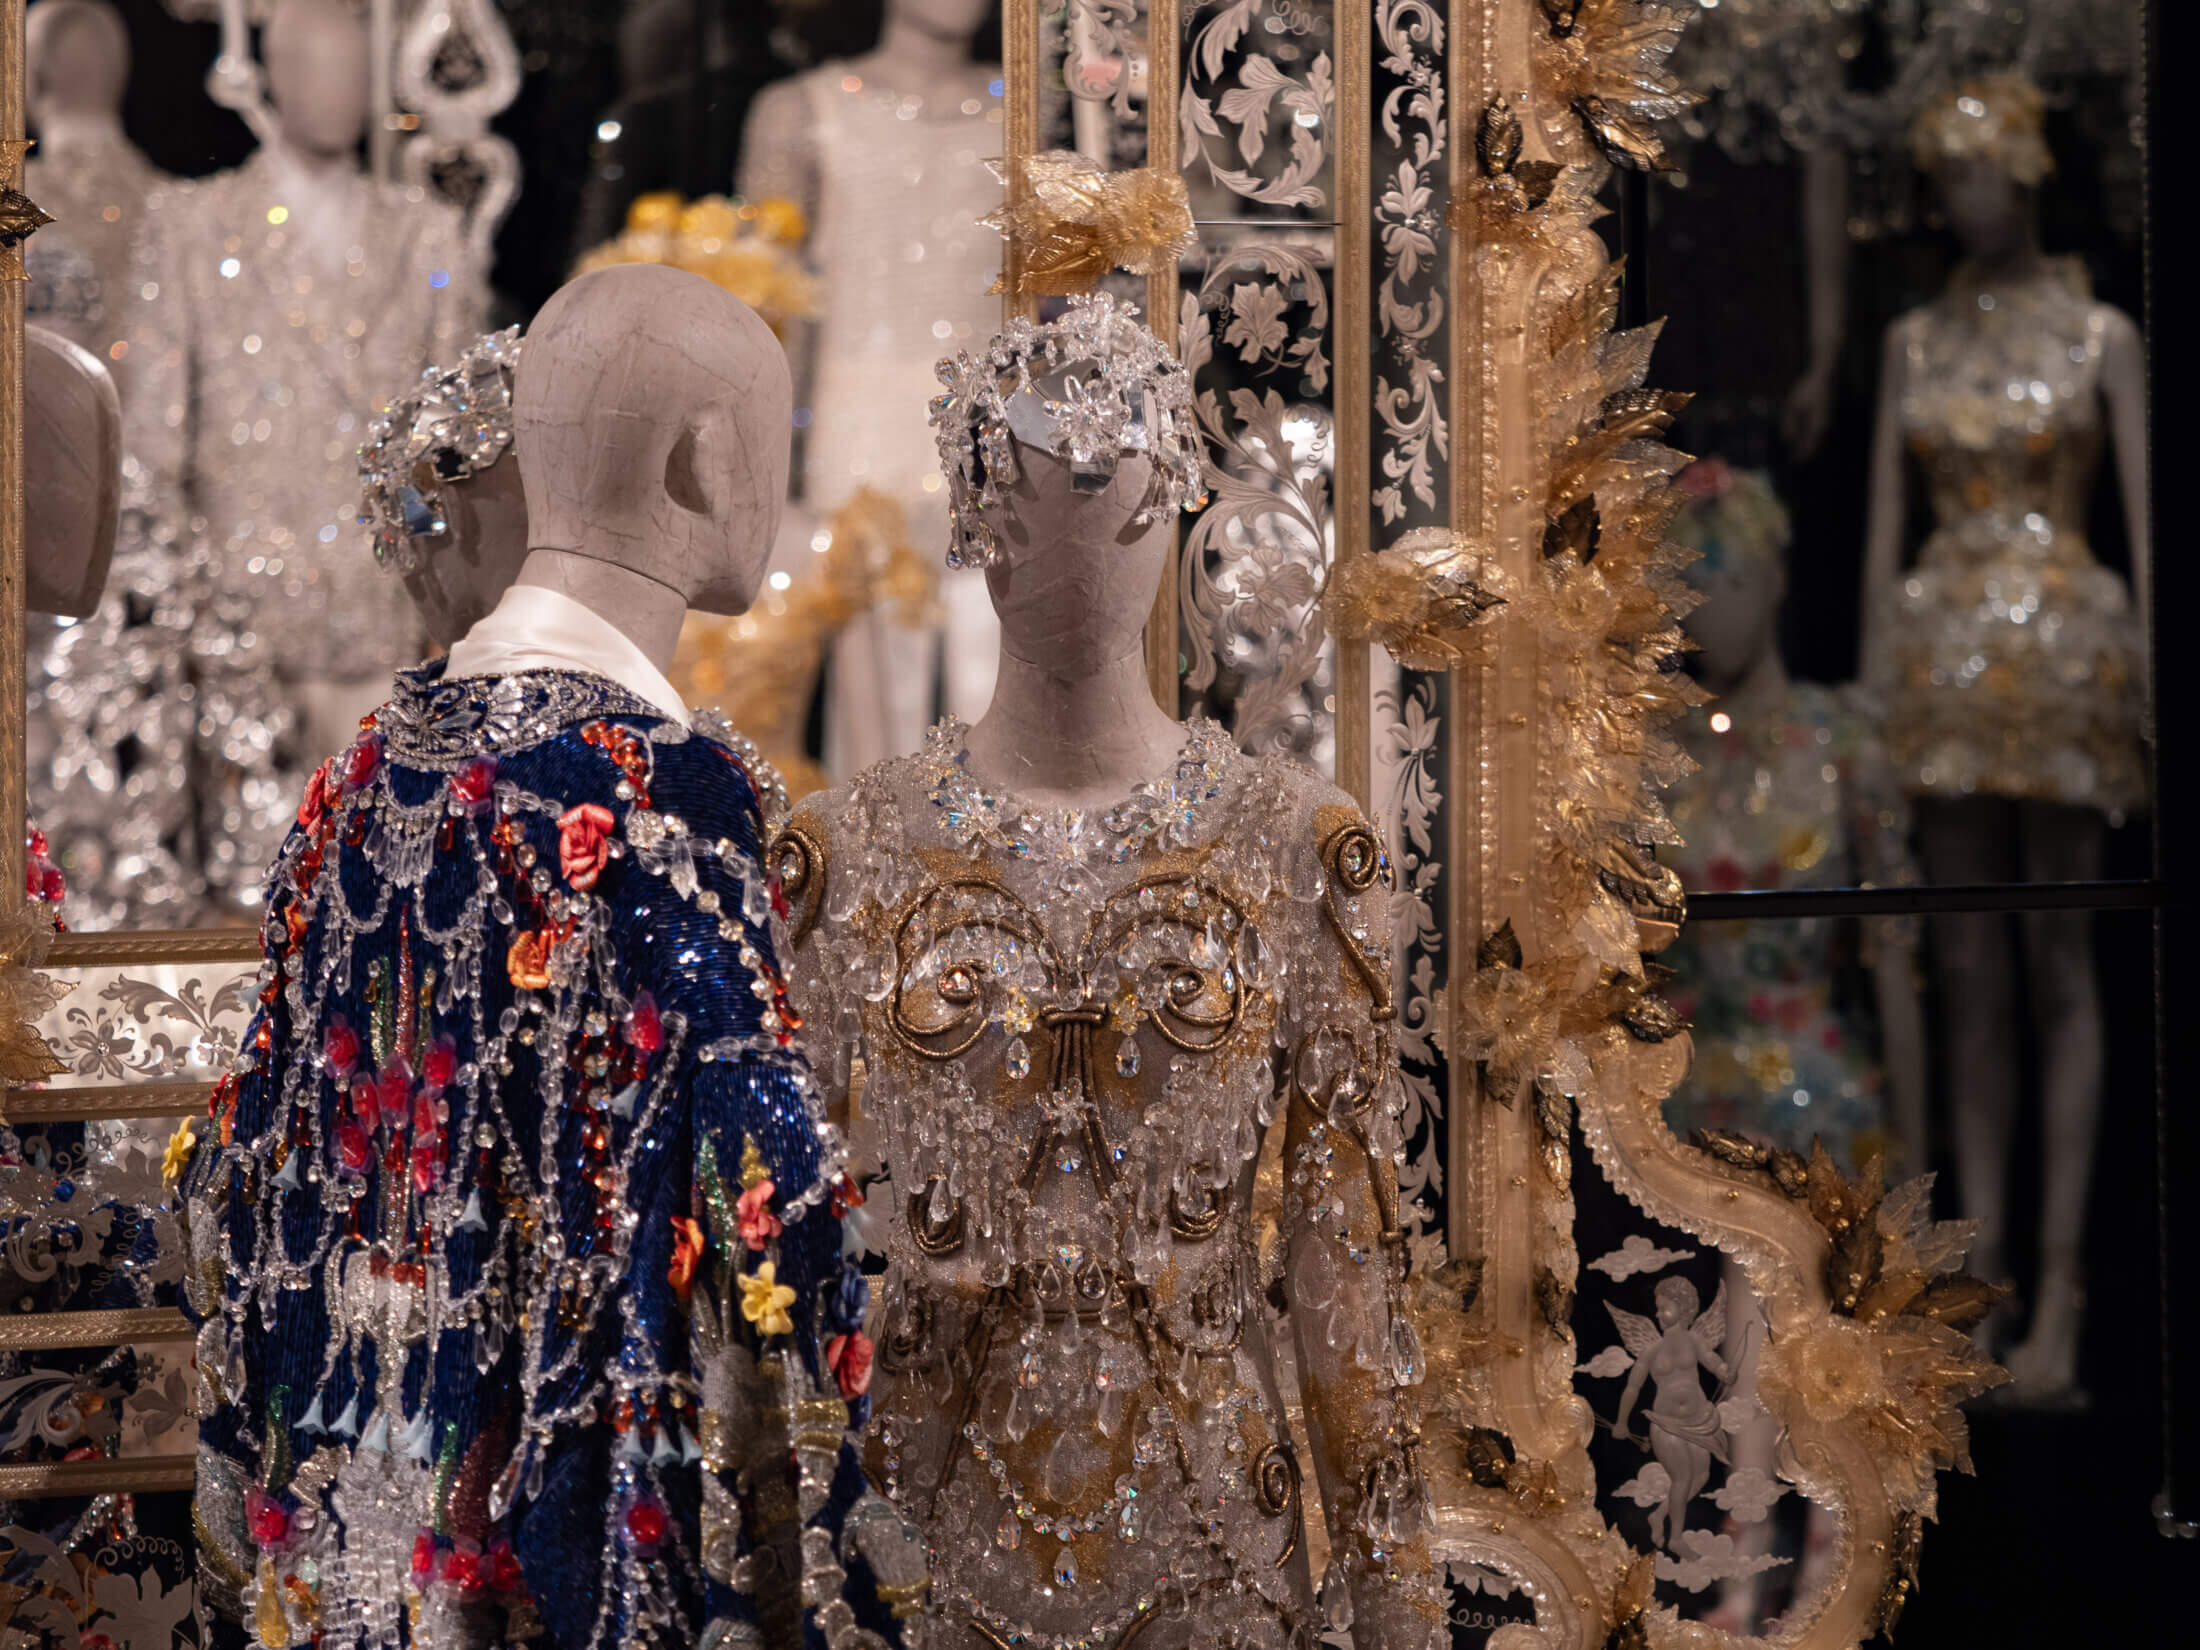 Zahvaljujući ovoj ekskluzivnoj izložbi možemo zaviriti u svijet modnog dvojca Dolce&Gabbana